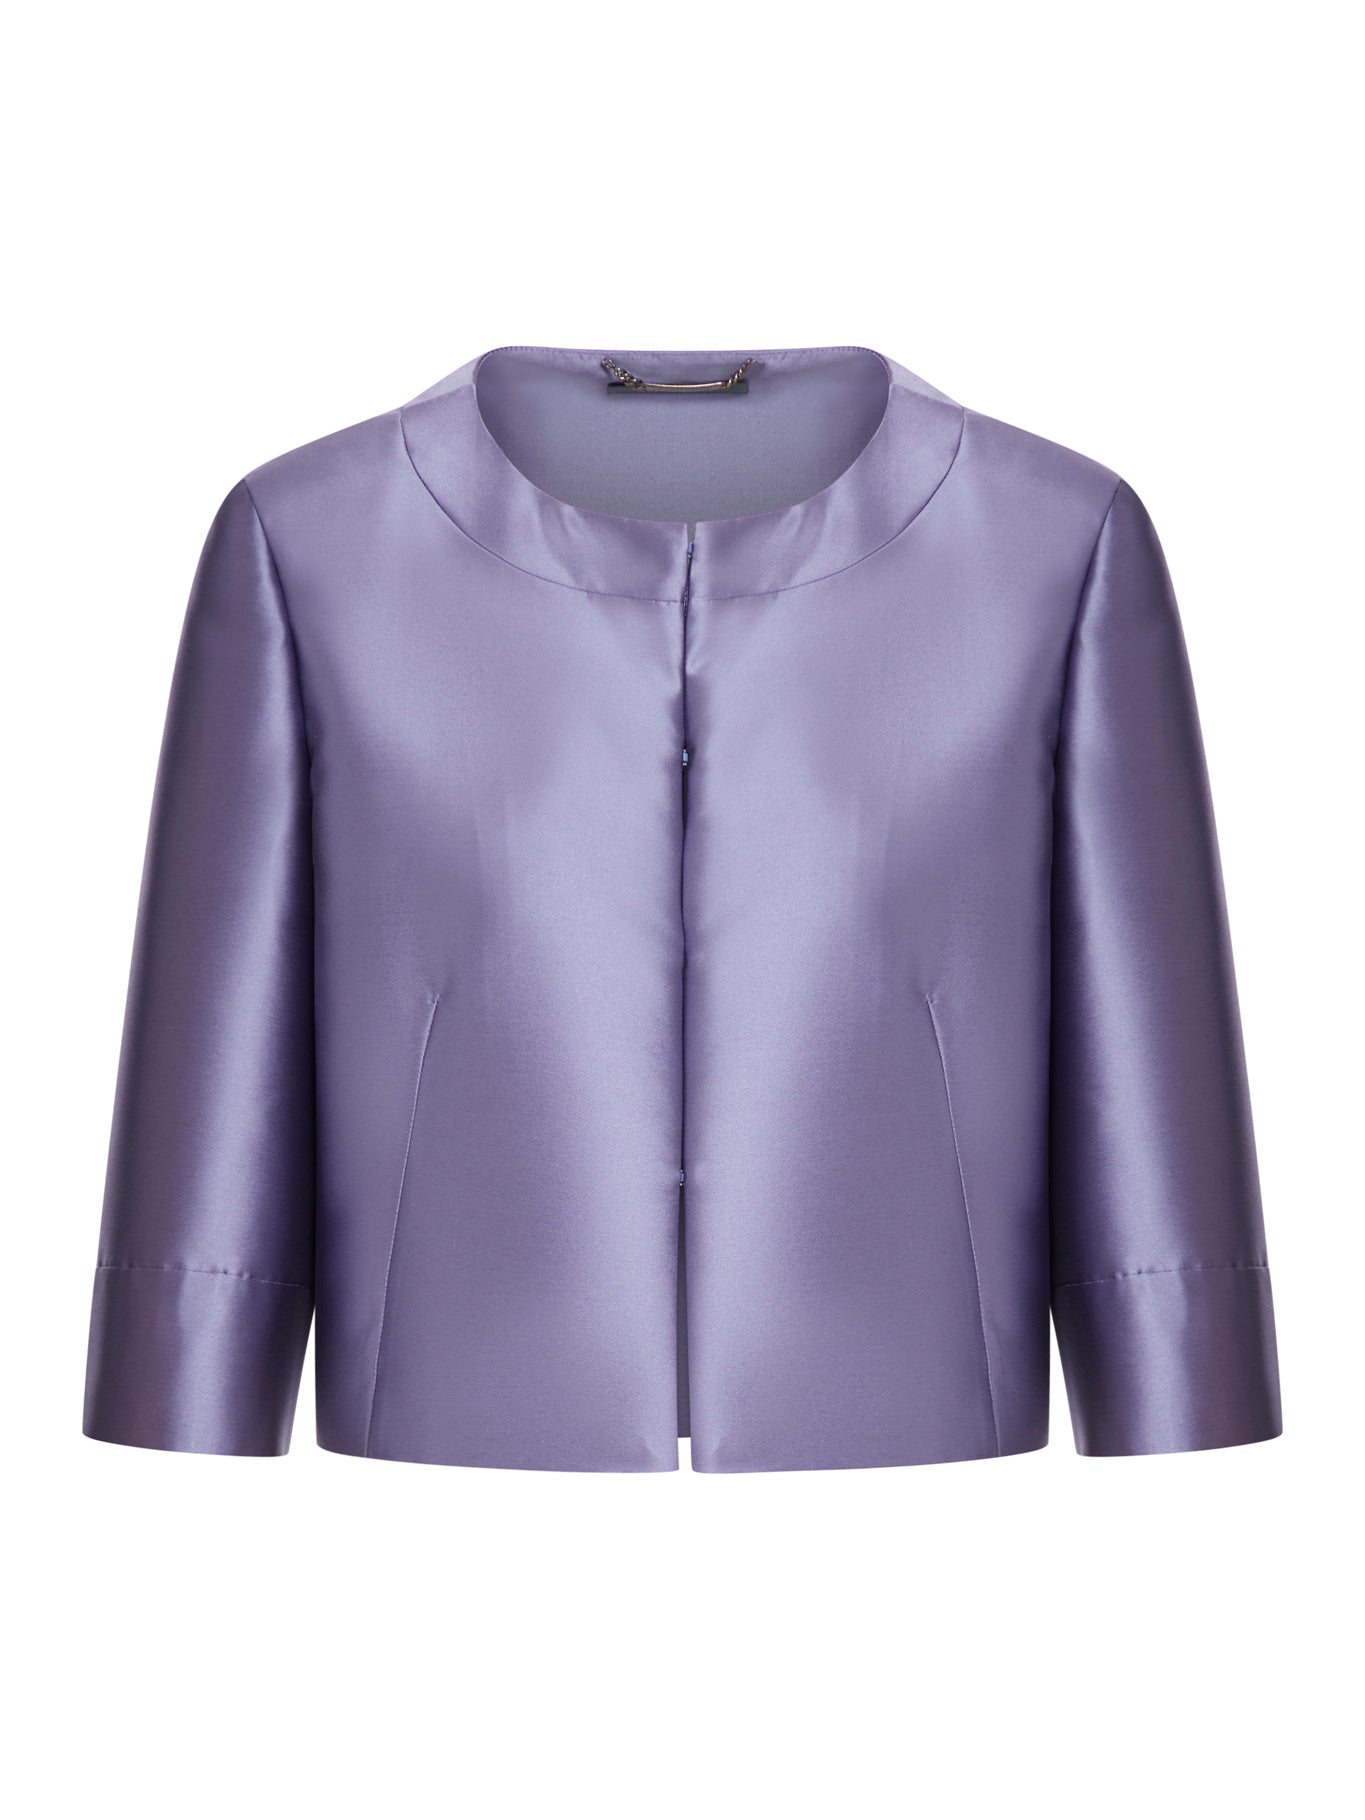 Alice And Olivia Leather Bomber Jacket Light Purple Size Large | eBay